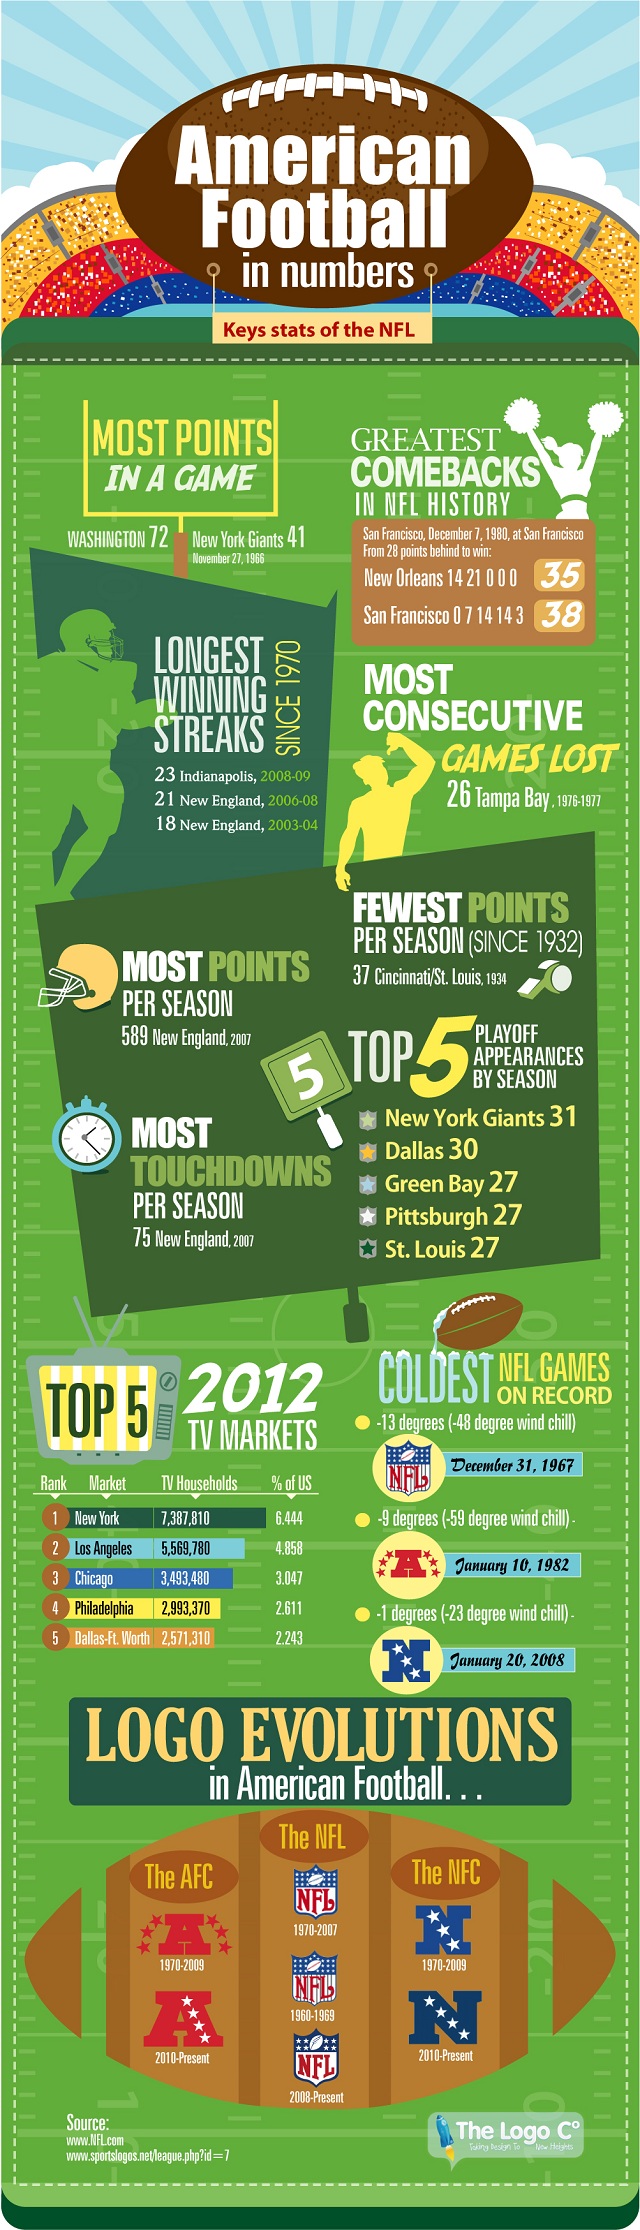 NFL: American Football in Numbers